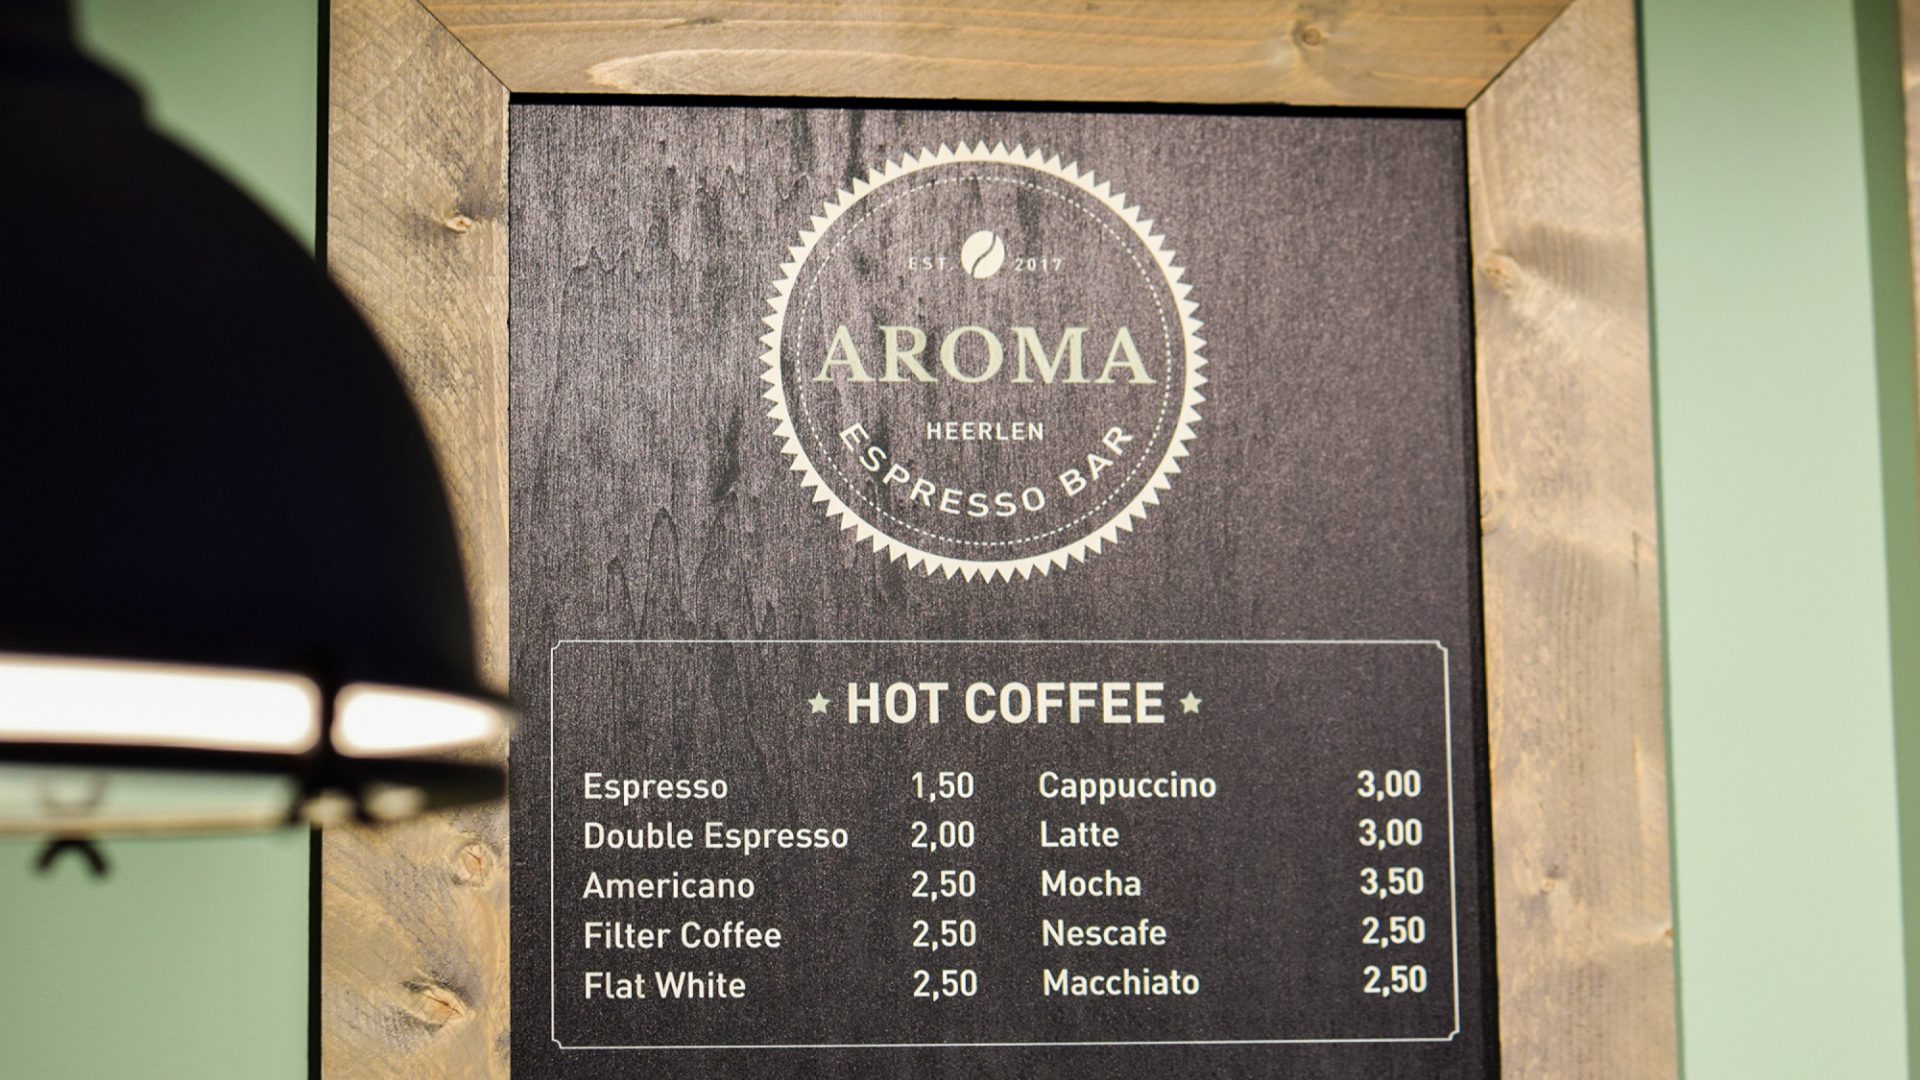 Aroma Espresso Bar 2017 12